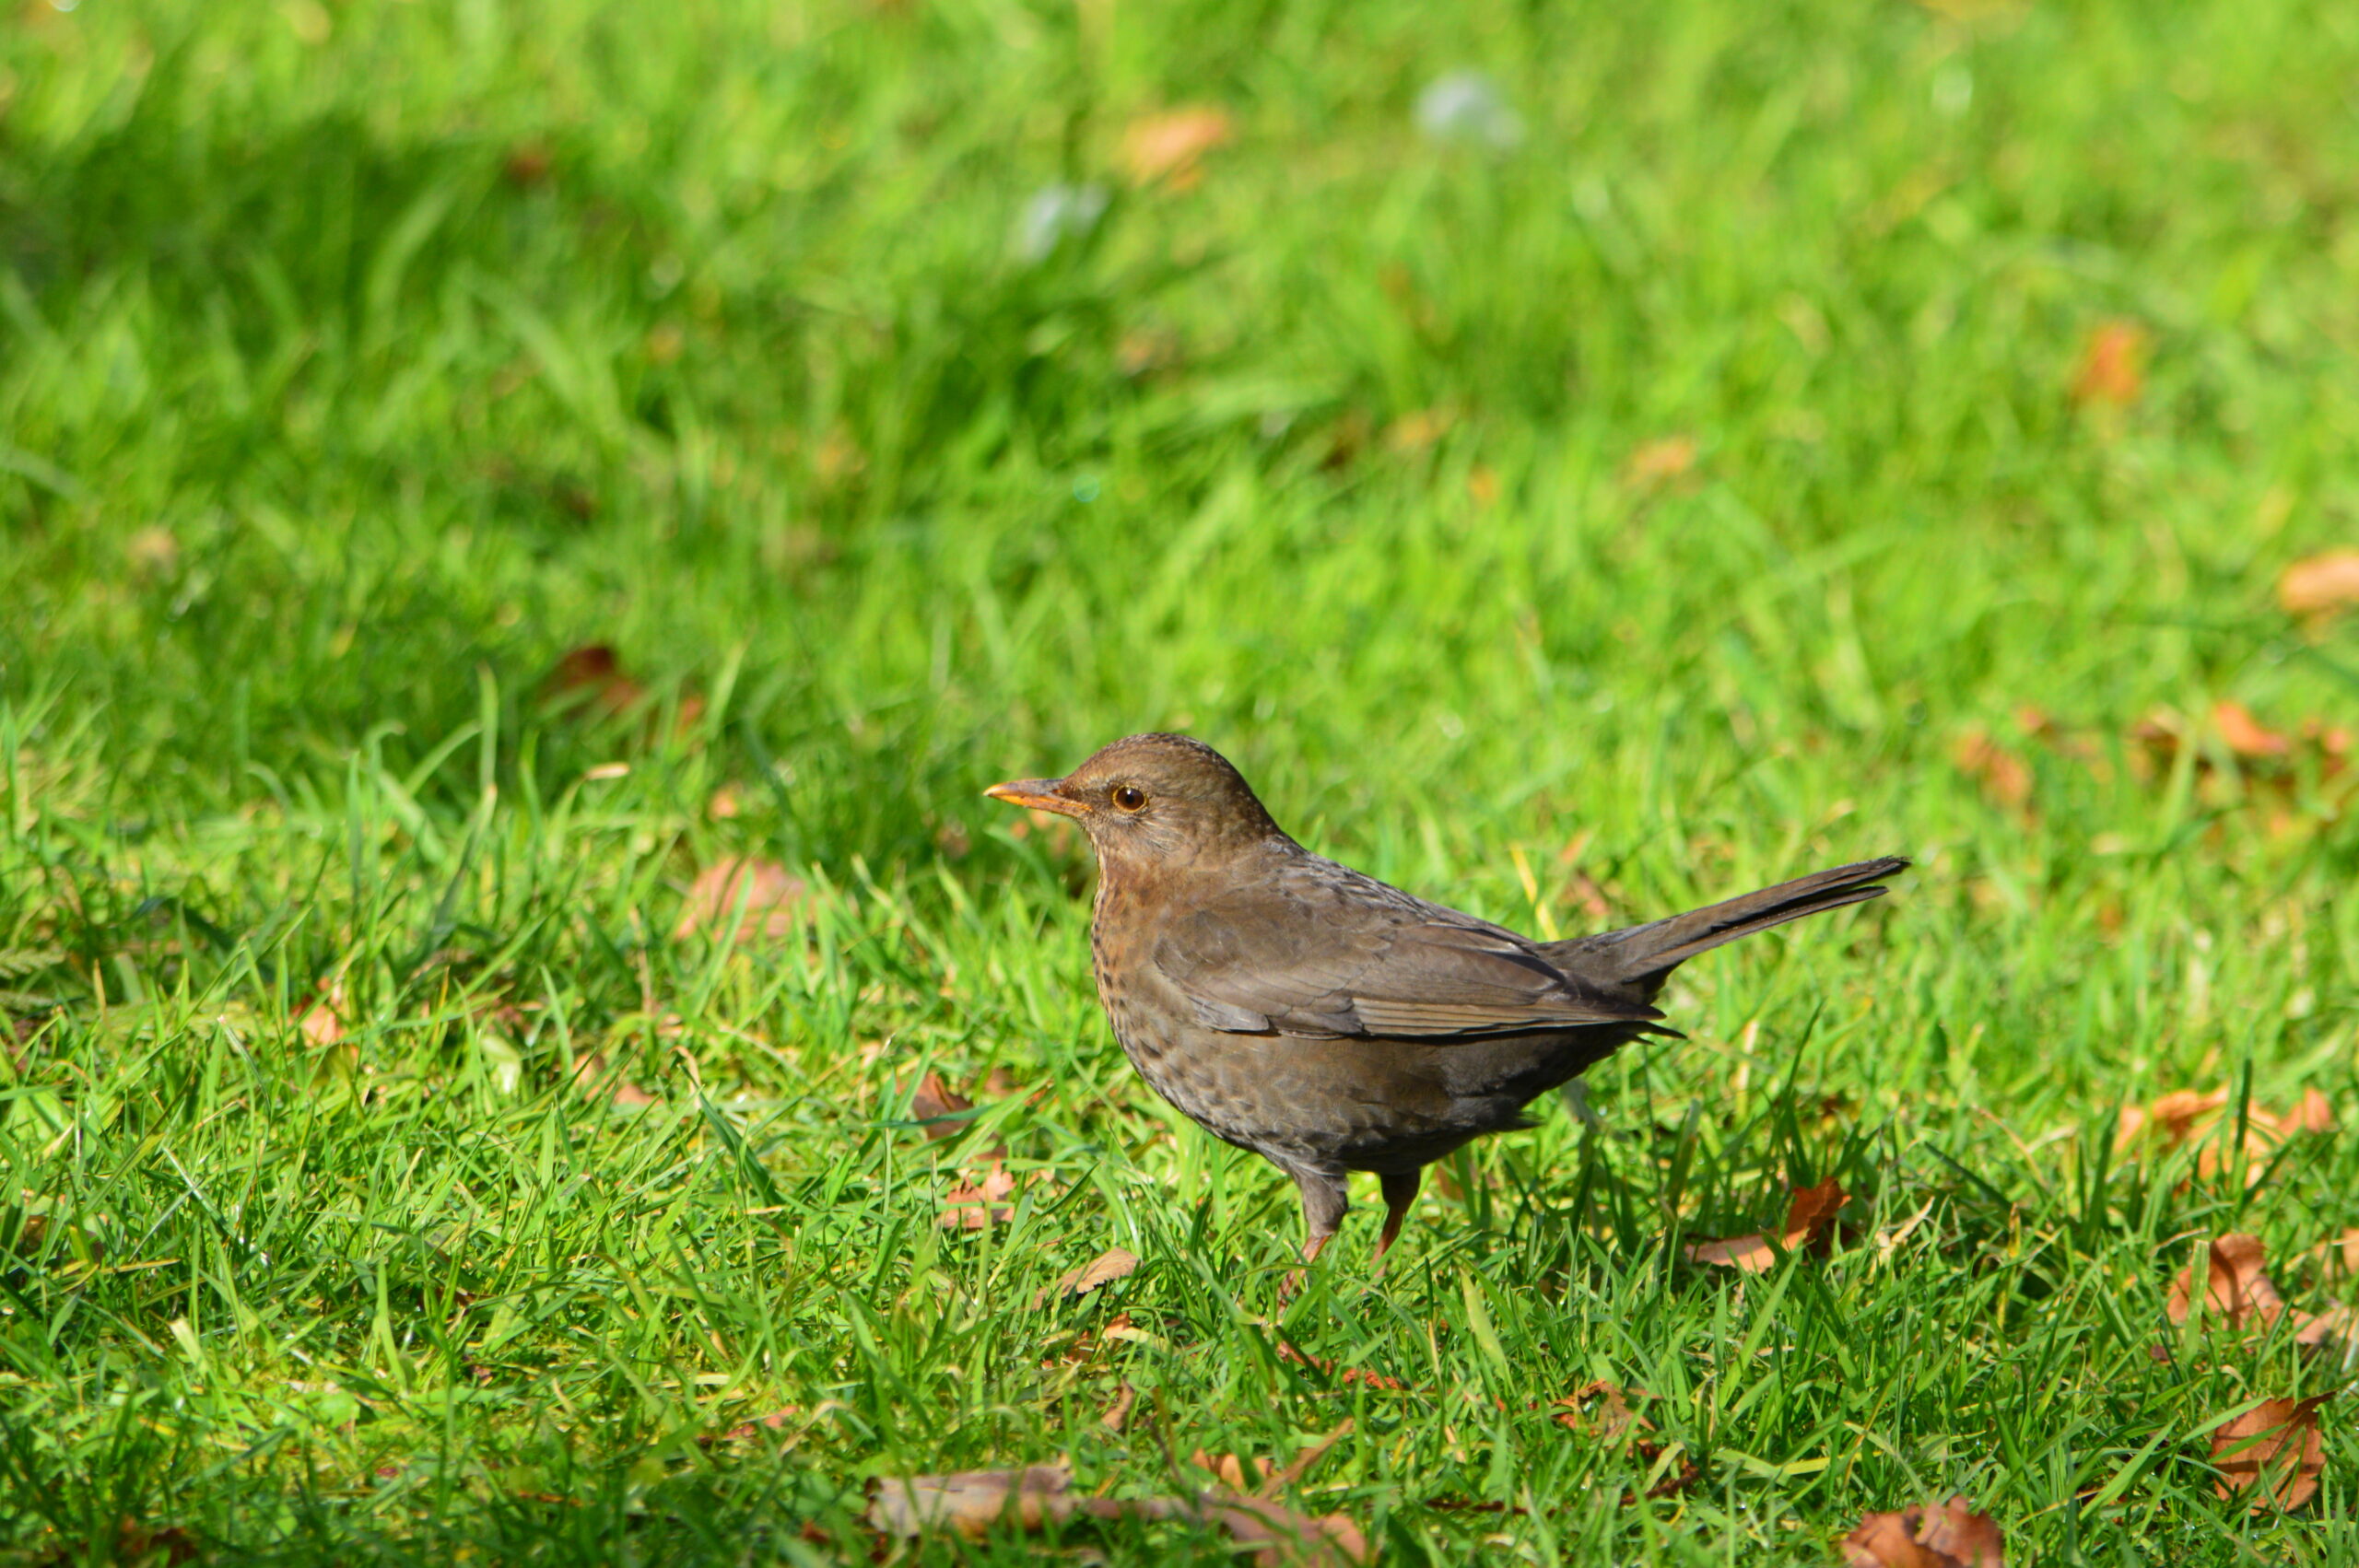 Female Blackbird stood on grass covered in leaves.